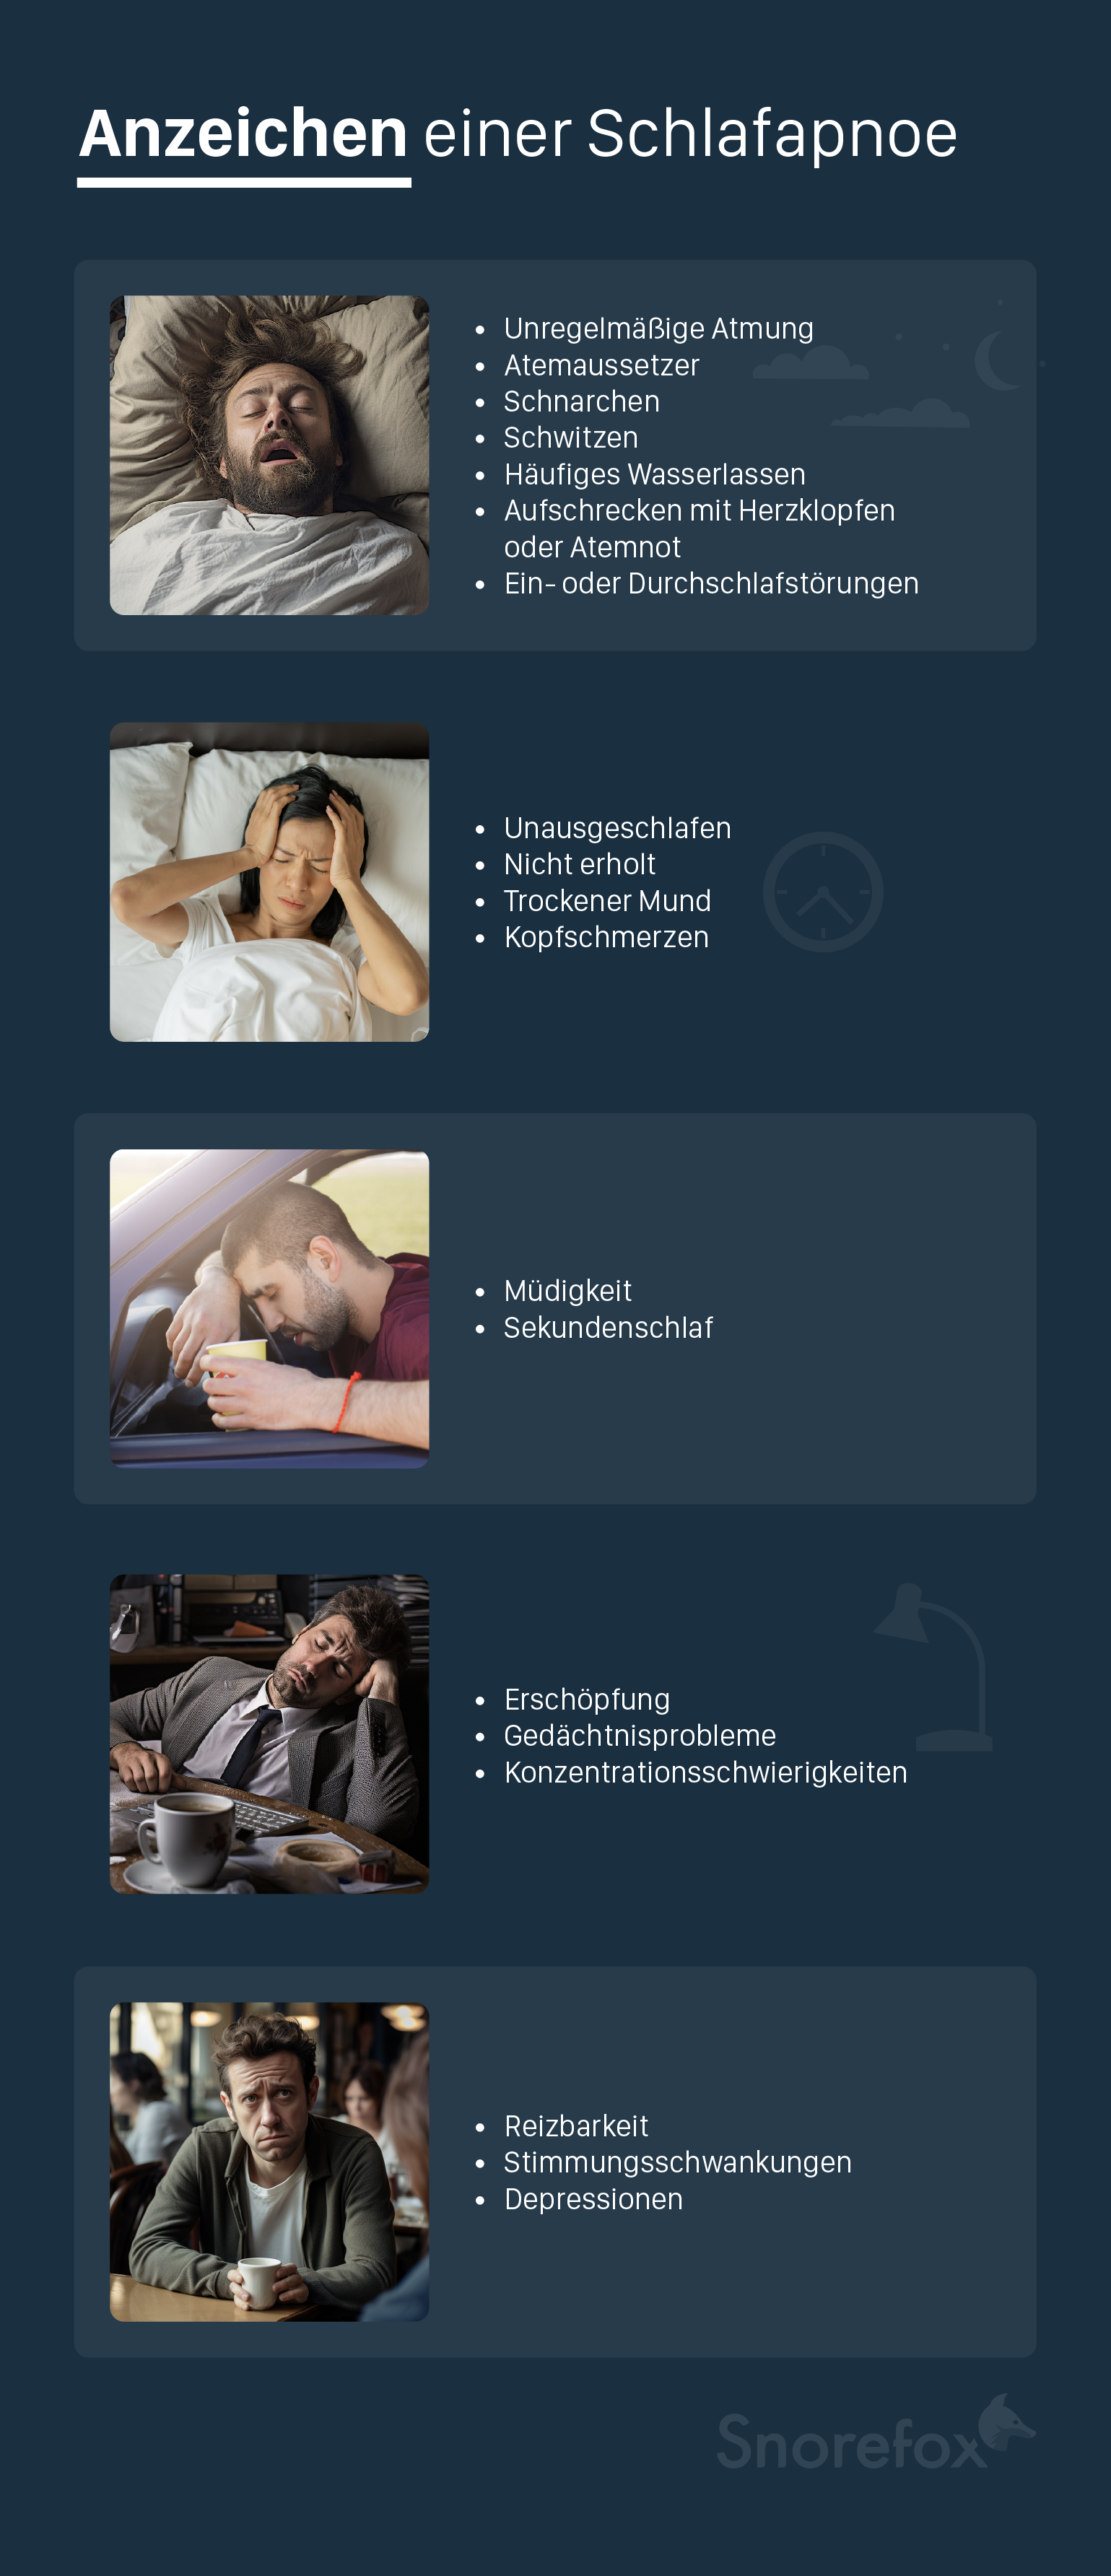 Ausführliche Liste von Symptomen einer Schlafapnoe, schlechter Schlaf, morgendliche Kopfschmerzen, Müdigkeit beim Autofahren, Müdigkeit bei der Arbeit, Depressionen